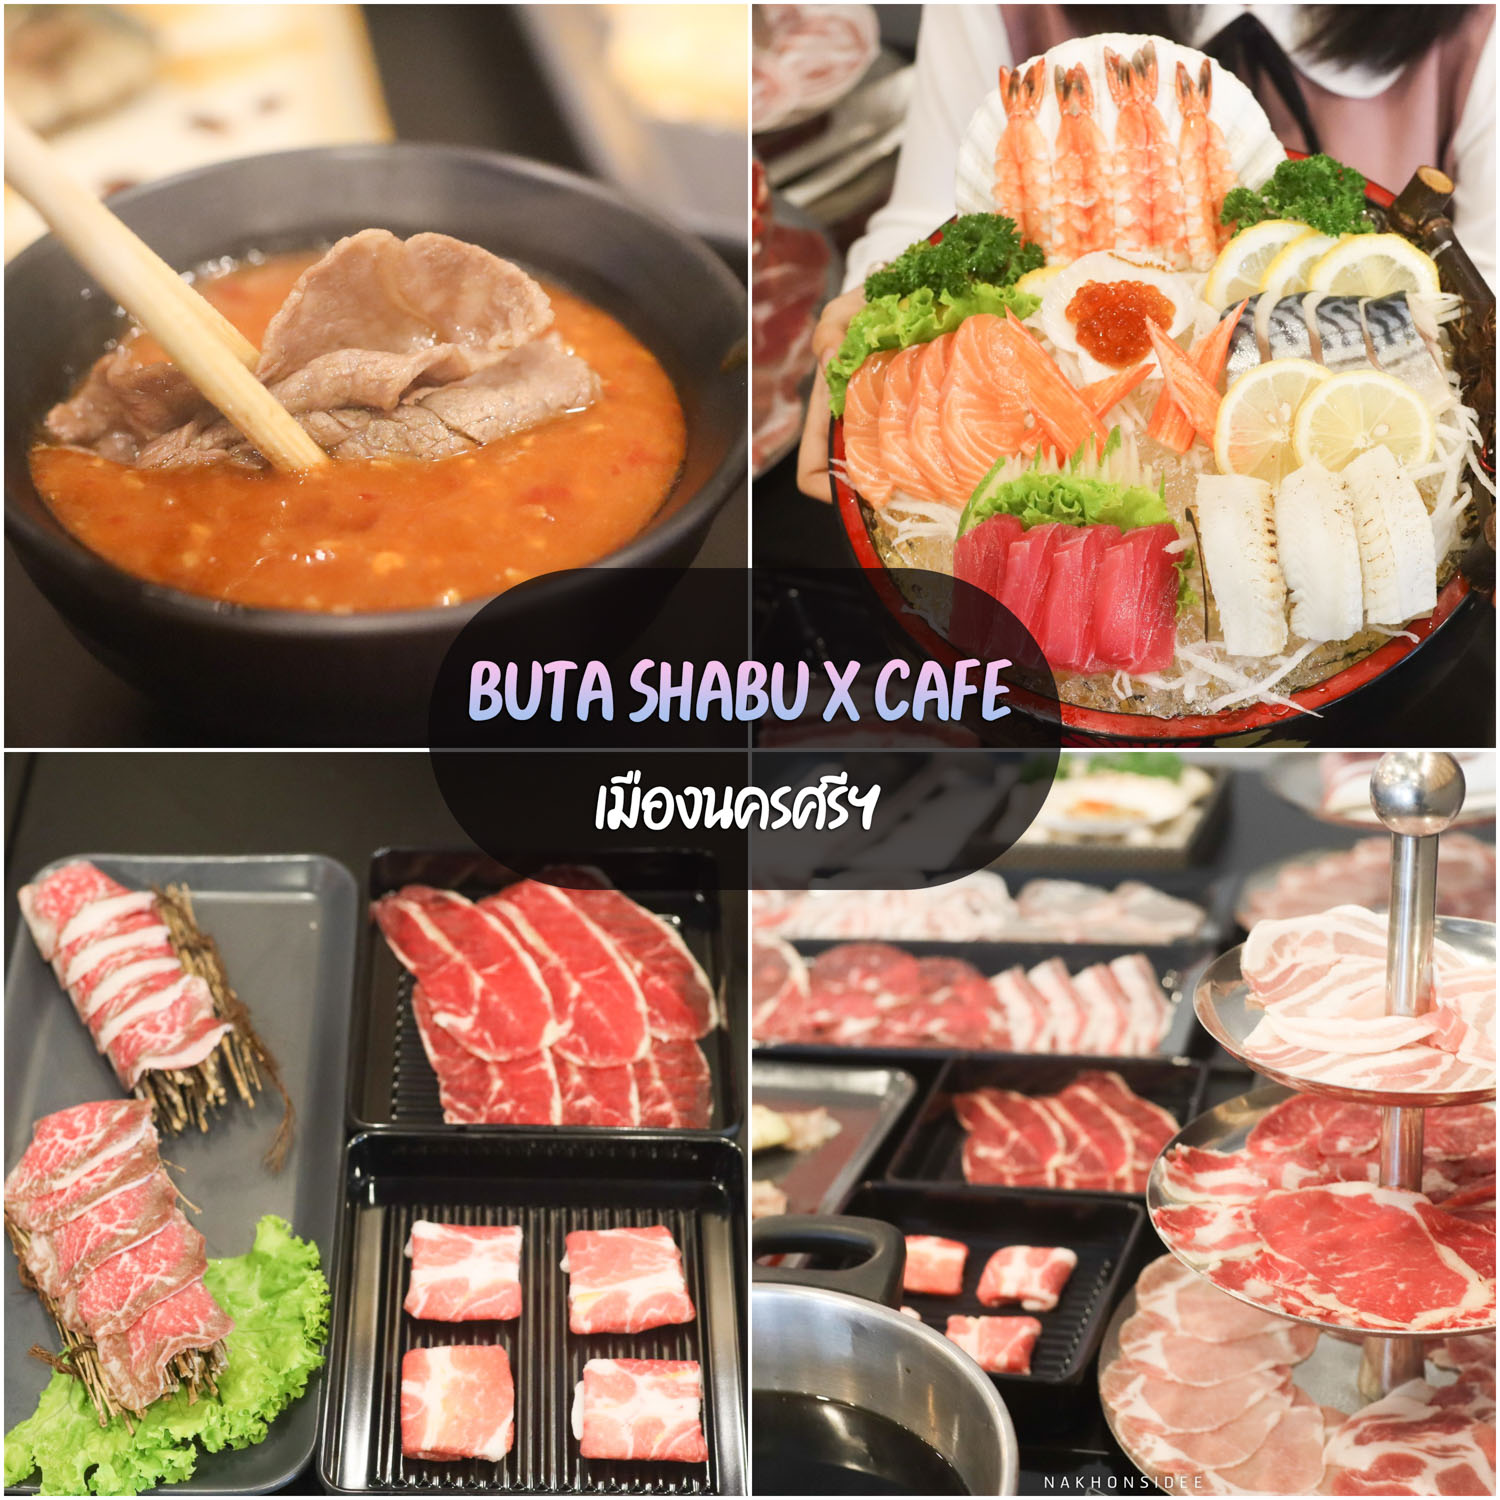 Buta-Shabu-X-Cafe -นครศรีธรรมราช-บุฟเฟ่ต์ชาบู-อาหารญี่ปุ่น-พร้อมของหวานแบบจัดเต็ม-วัตถุดิบดี-น้ำจิ้มอร่อยมวากกก-บอกเลยต้องห้ามพลาด
 จุดเช็คอินนครศรีธรรมราช,2023,2566